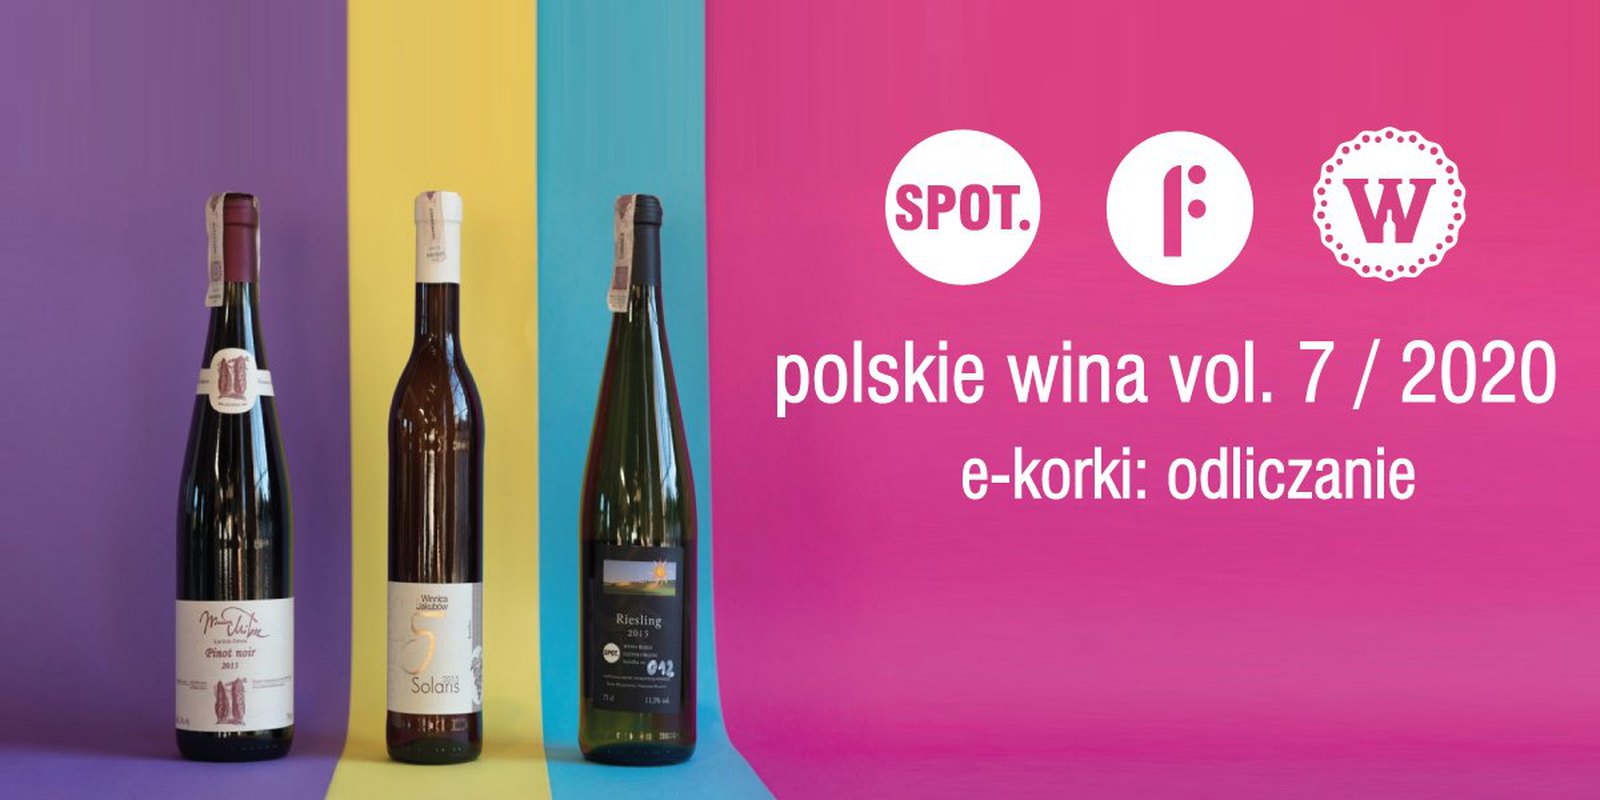 E-korki: odliczanie _ polskie wina vol. 7 / 2020